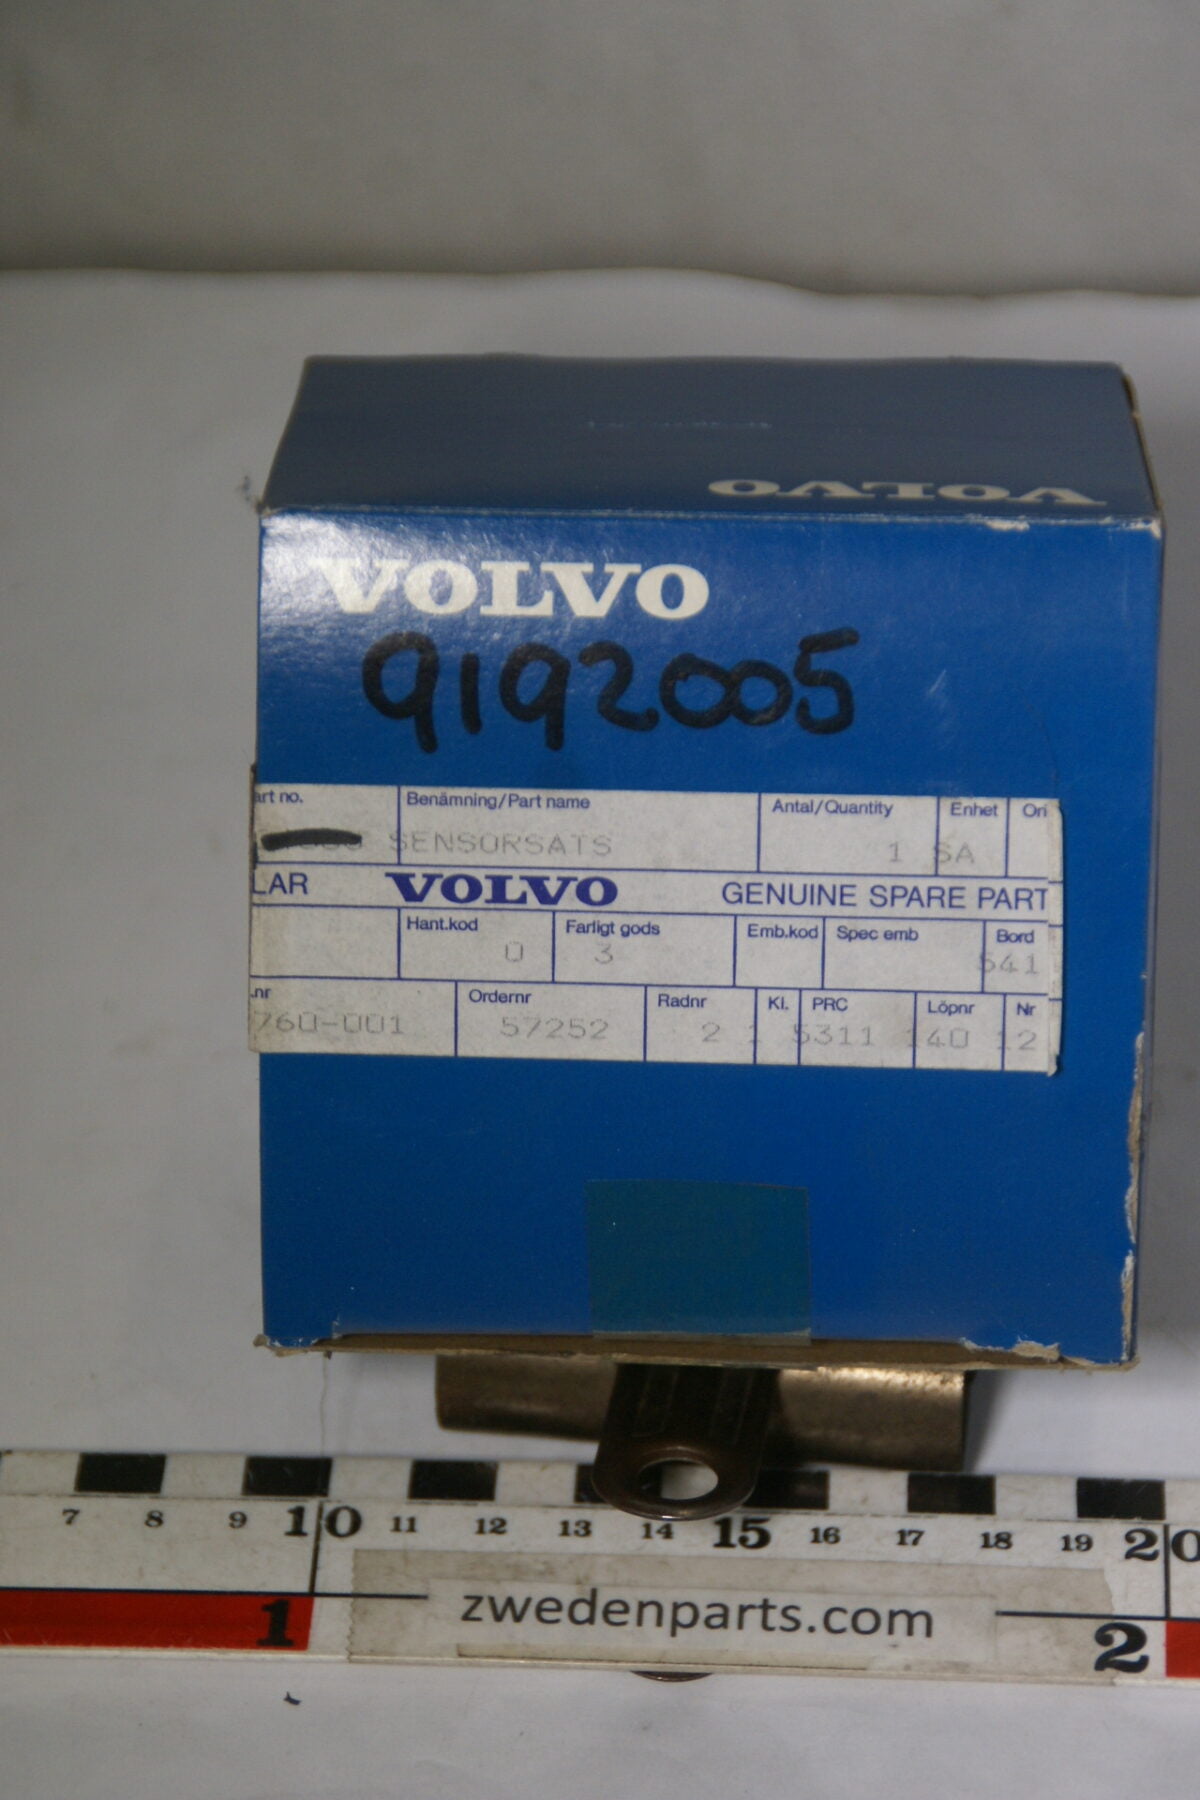 DSC01815 120 ultrasoon sensor set origineel Volvo  V70 artnr. 9192005 NOS-ba502d49